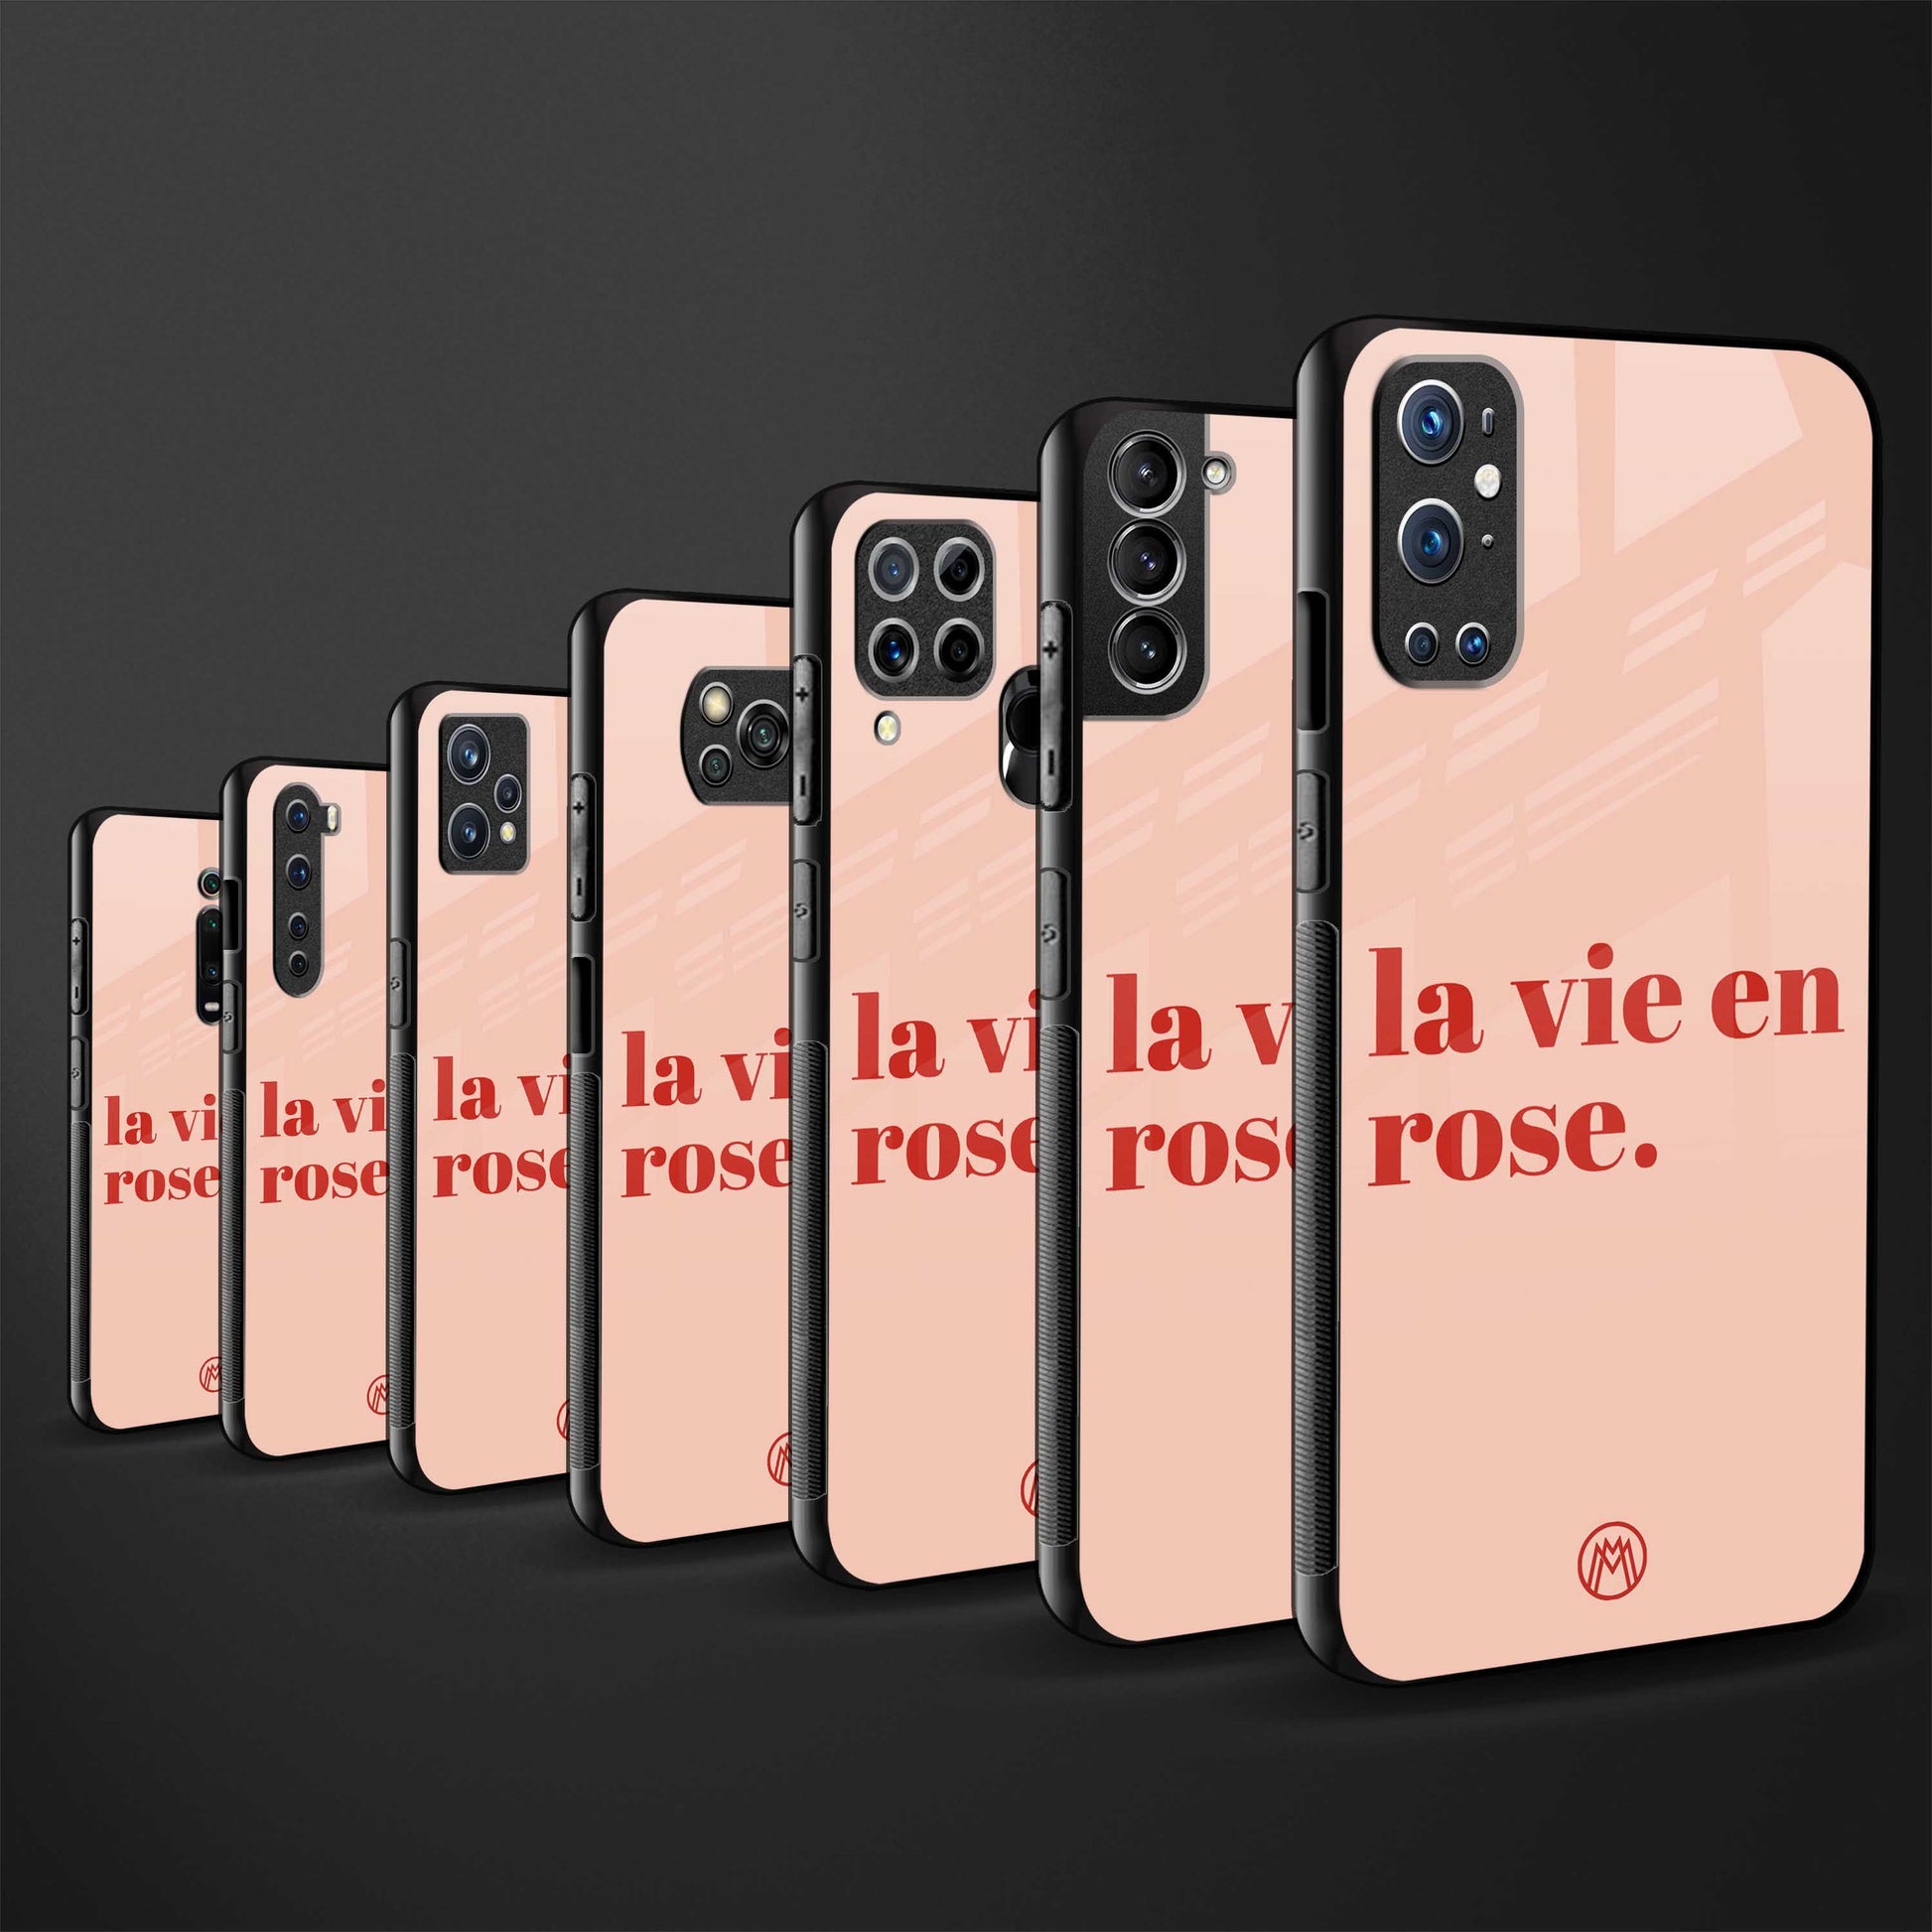 la vie en rose quote glass case for iphone se 2020 image-3